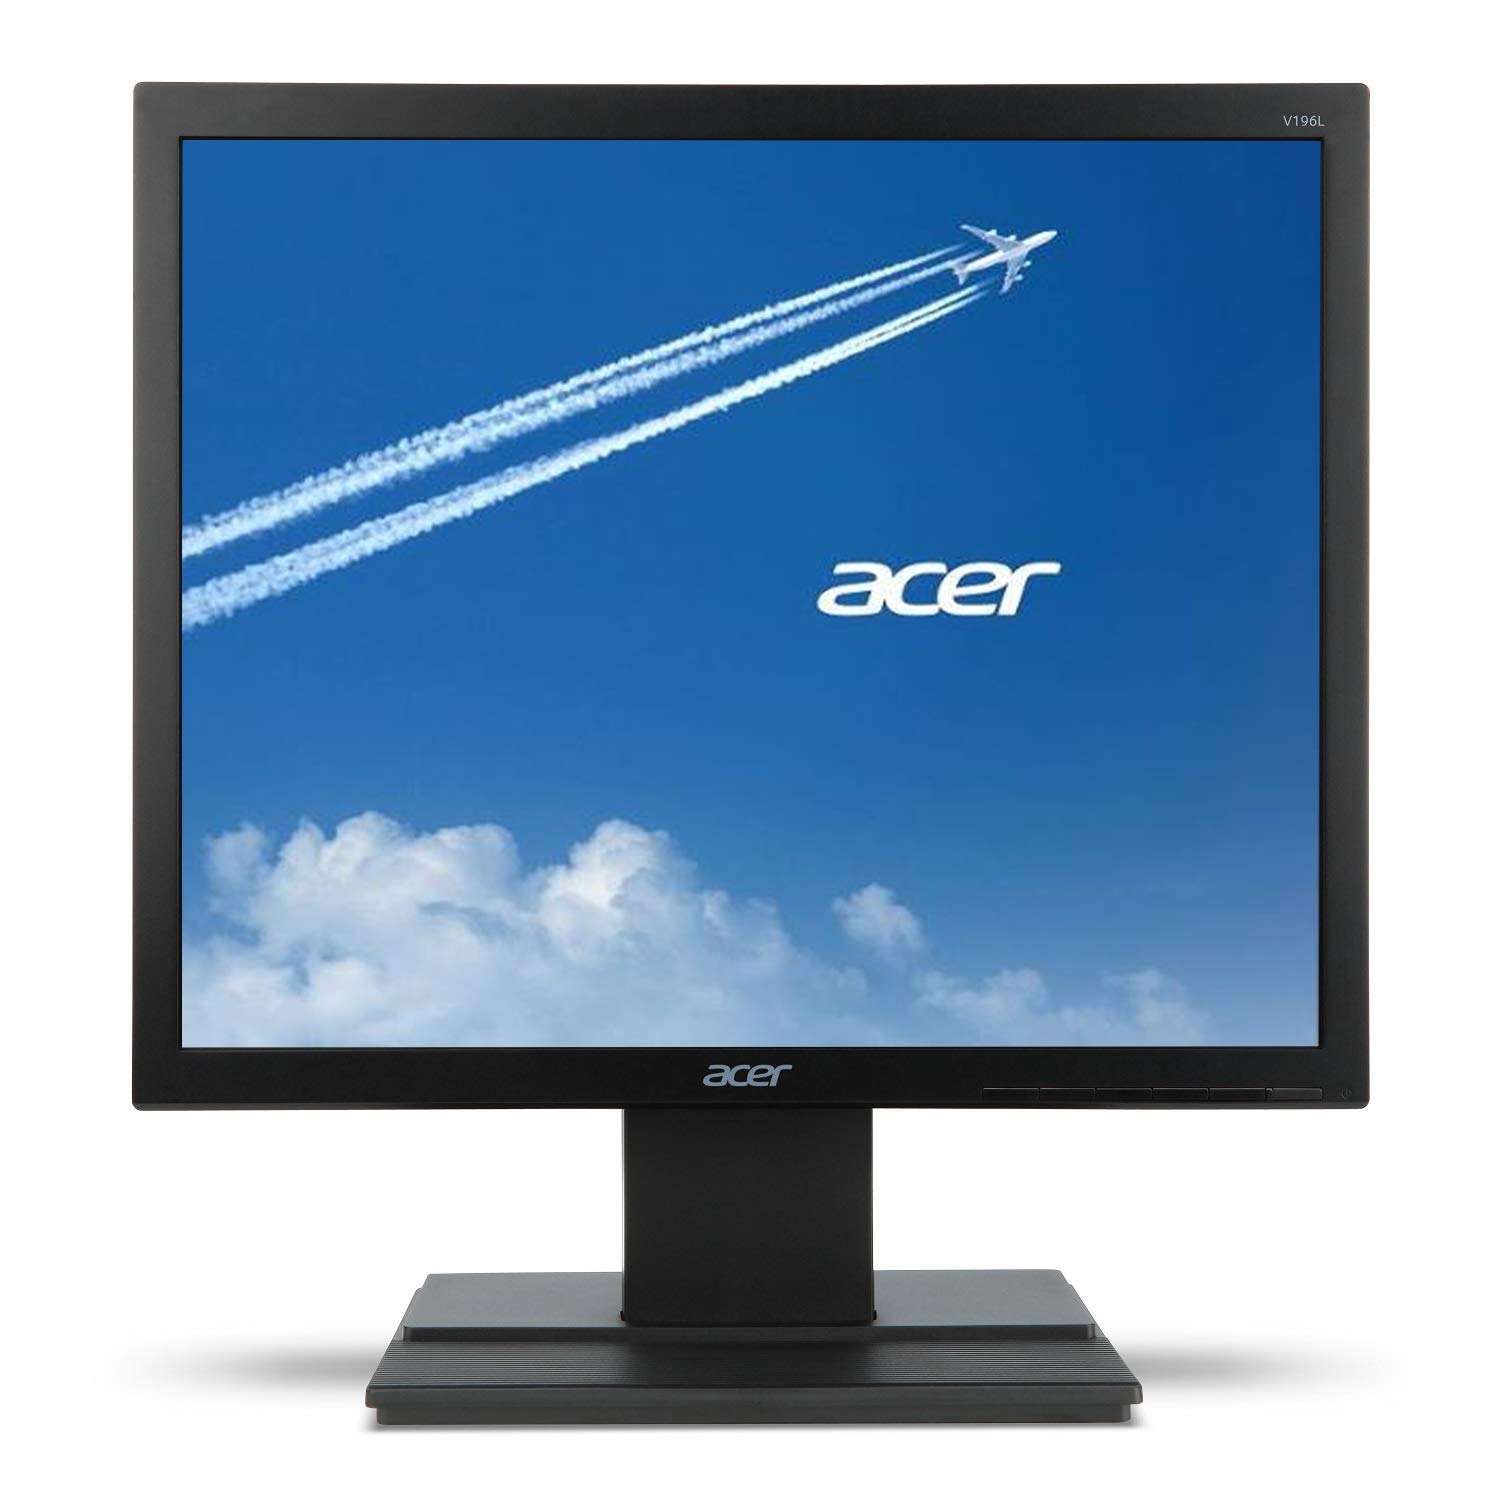 Acer V196L Bb 19' 高清 (1280 x 1024) IPS 显示器（VGA 端口）